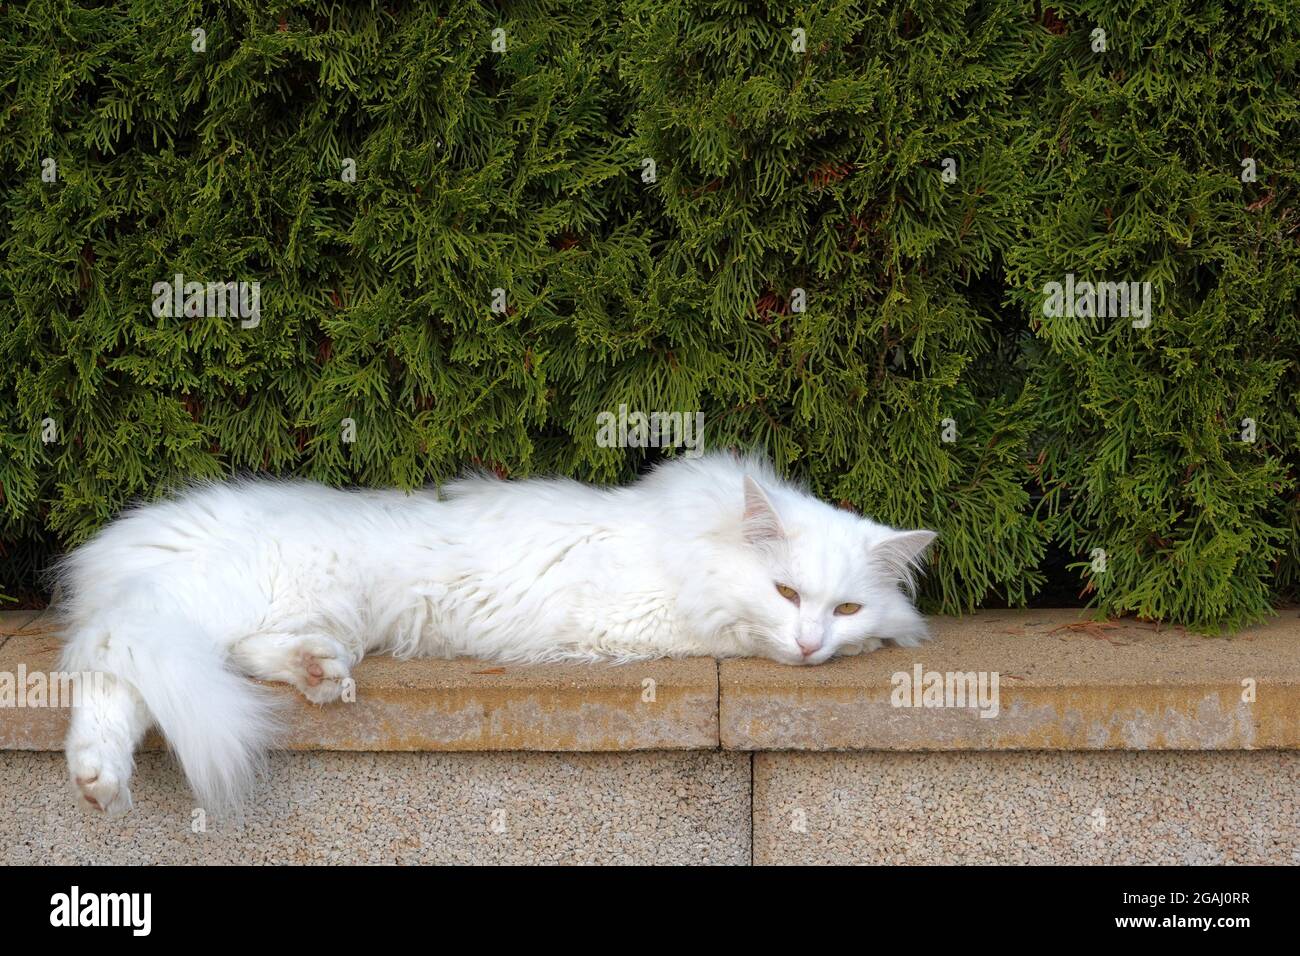 Weiße Katze mit langen Haaren, die an einer Ziegelwand gestreckt sind. Auf  dem Hintergrund befindet sich eine Zedernhecke mit viel Kopierraum  Stockfotografie - Alamy